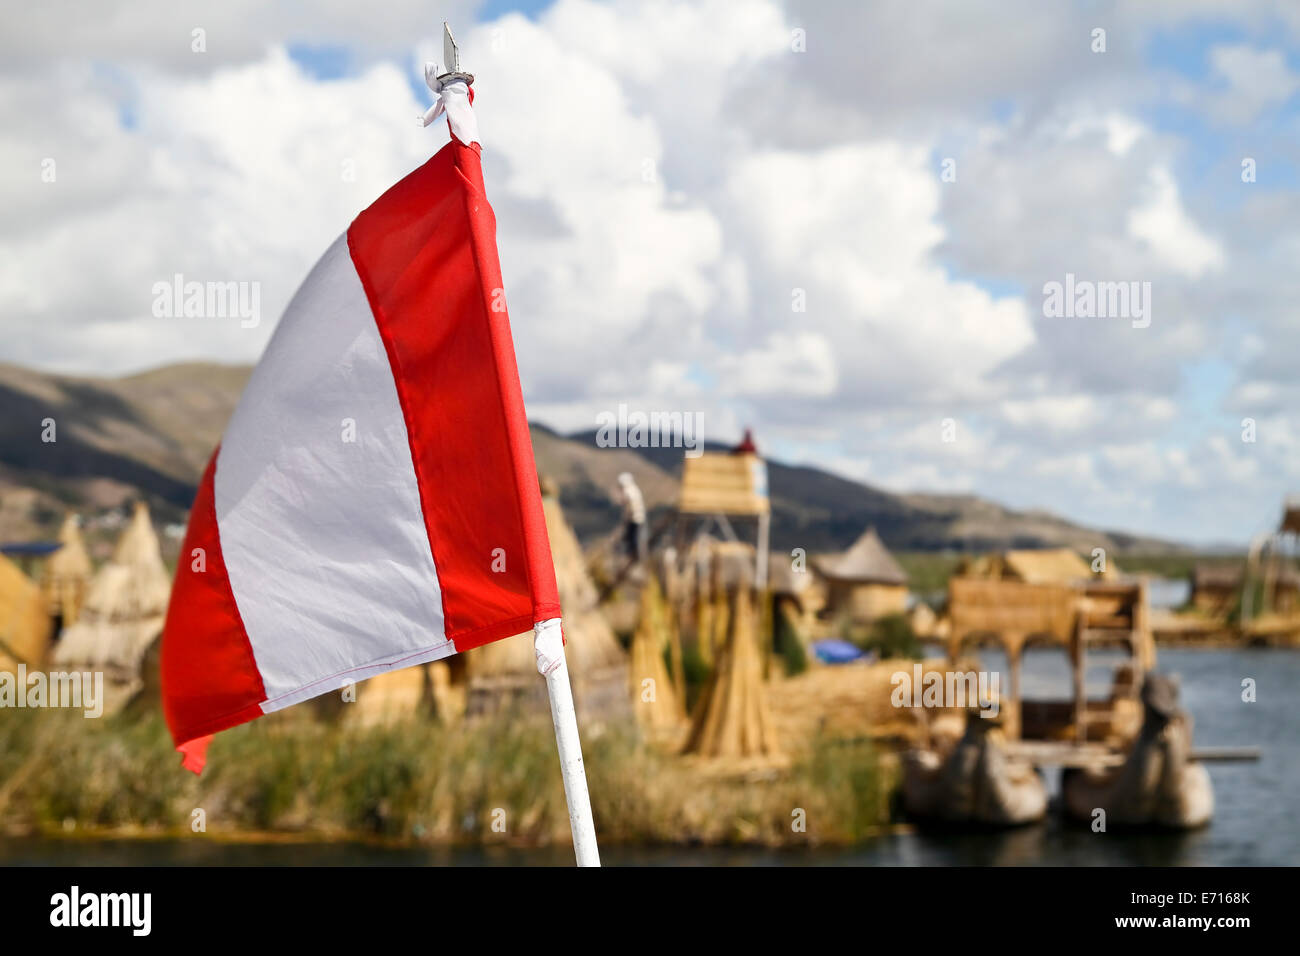 Südamerika, Peru, Flagge von Peru, die schwimmenden Inseln im Titicaca-See im Hintergrund Stockfoto